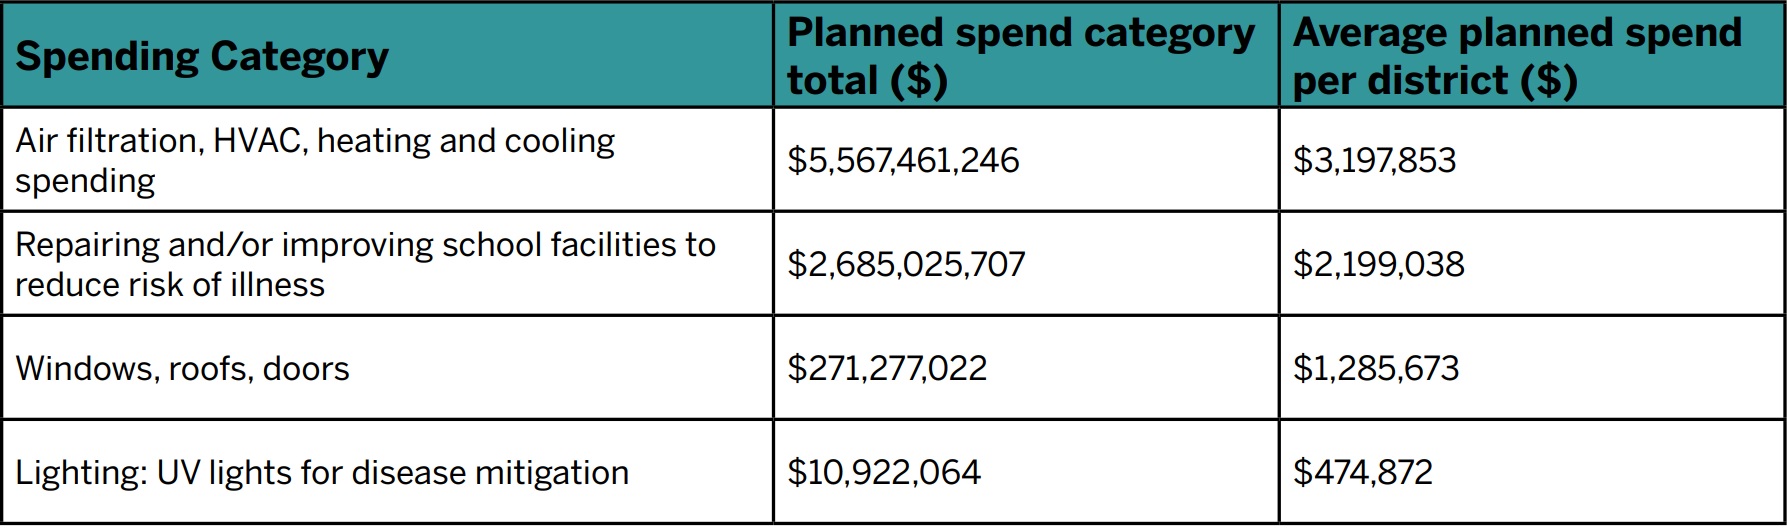 usgbc-spending-school-table.jpg